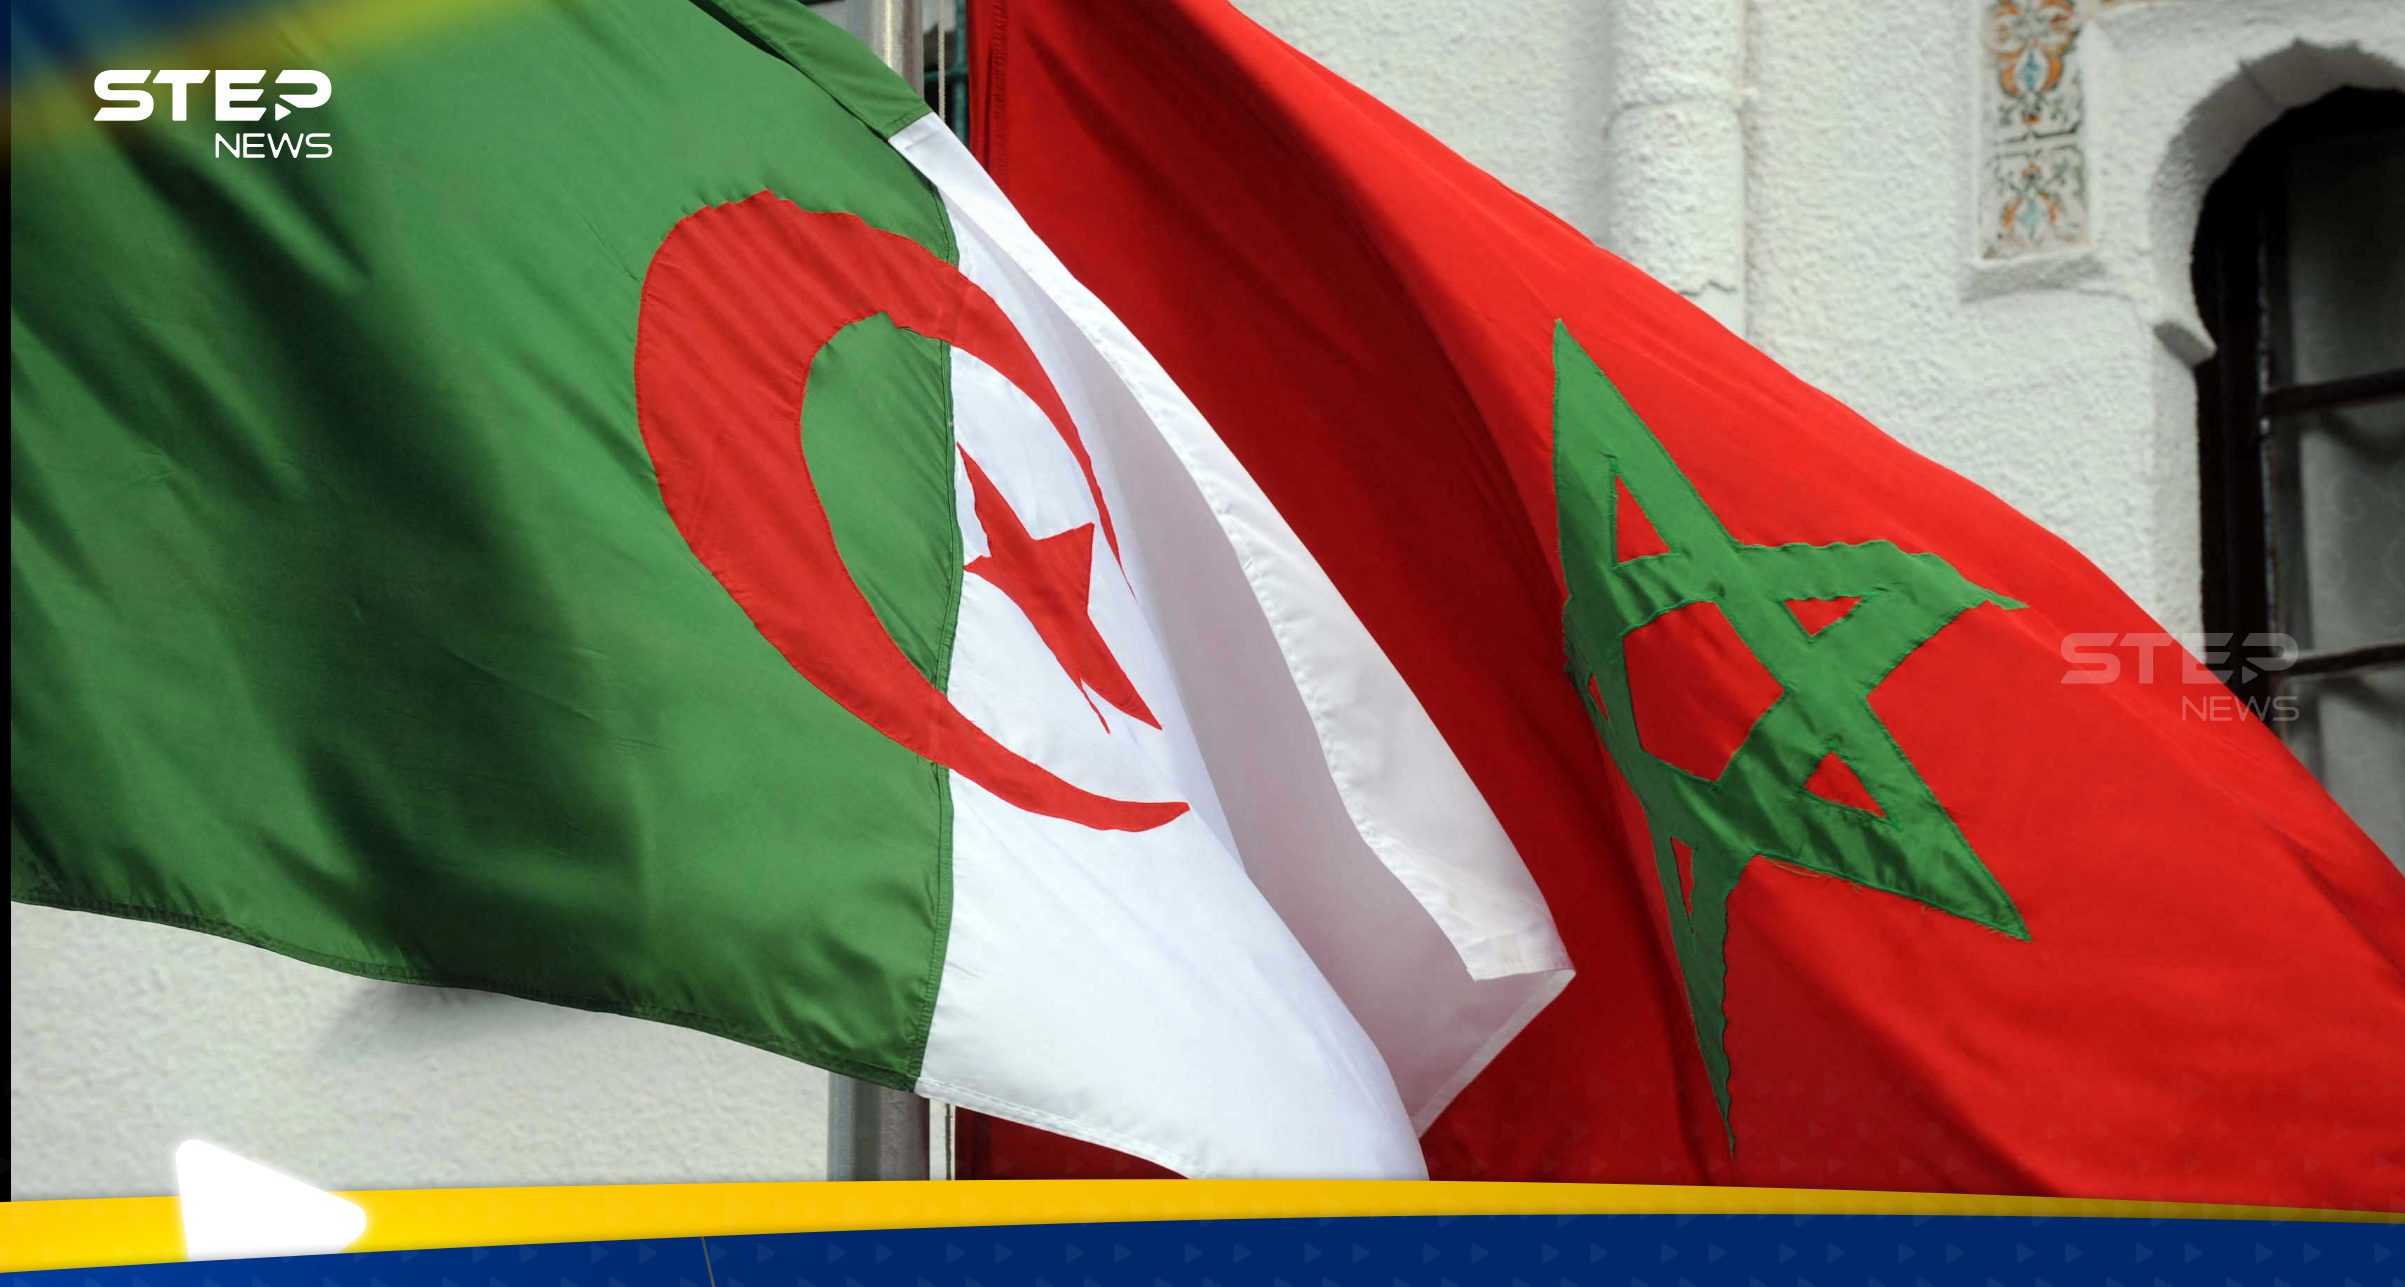 الجزائر تندد بمشروع مصادرة أملاك سفارتها بالمغرب وتتوعد بالرد "المناسب" 